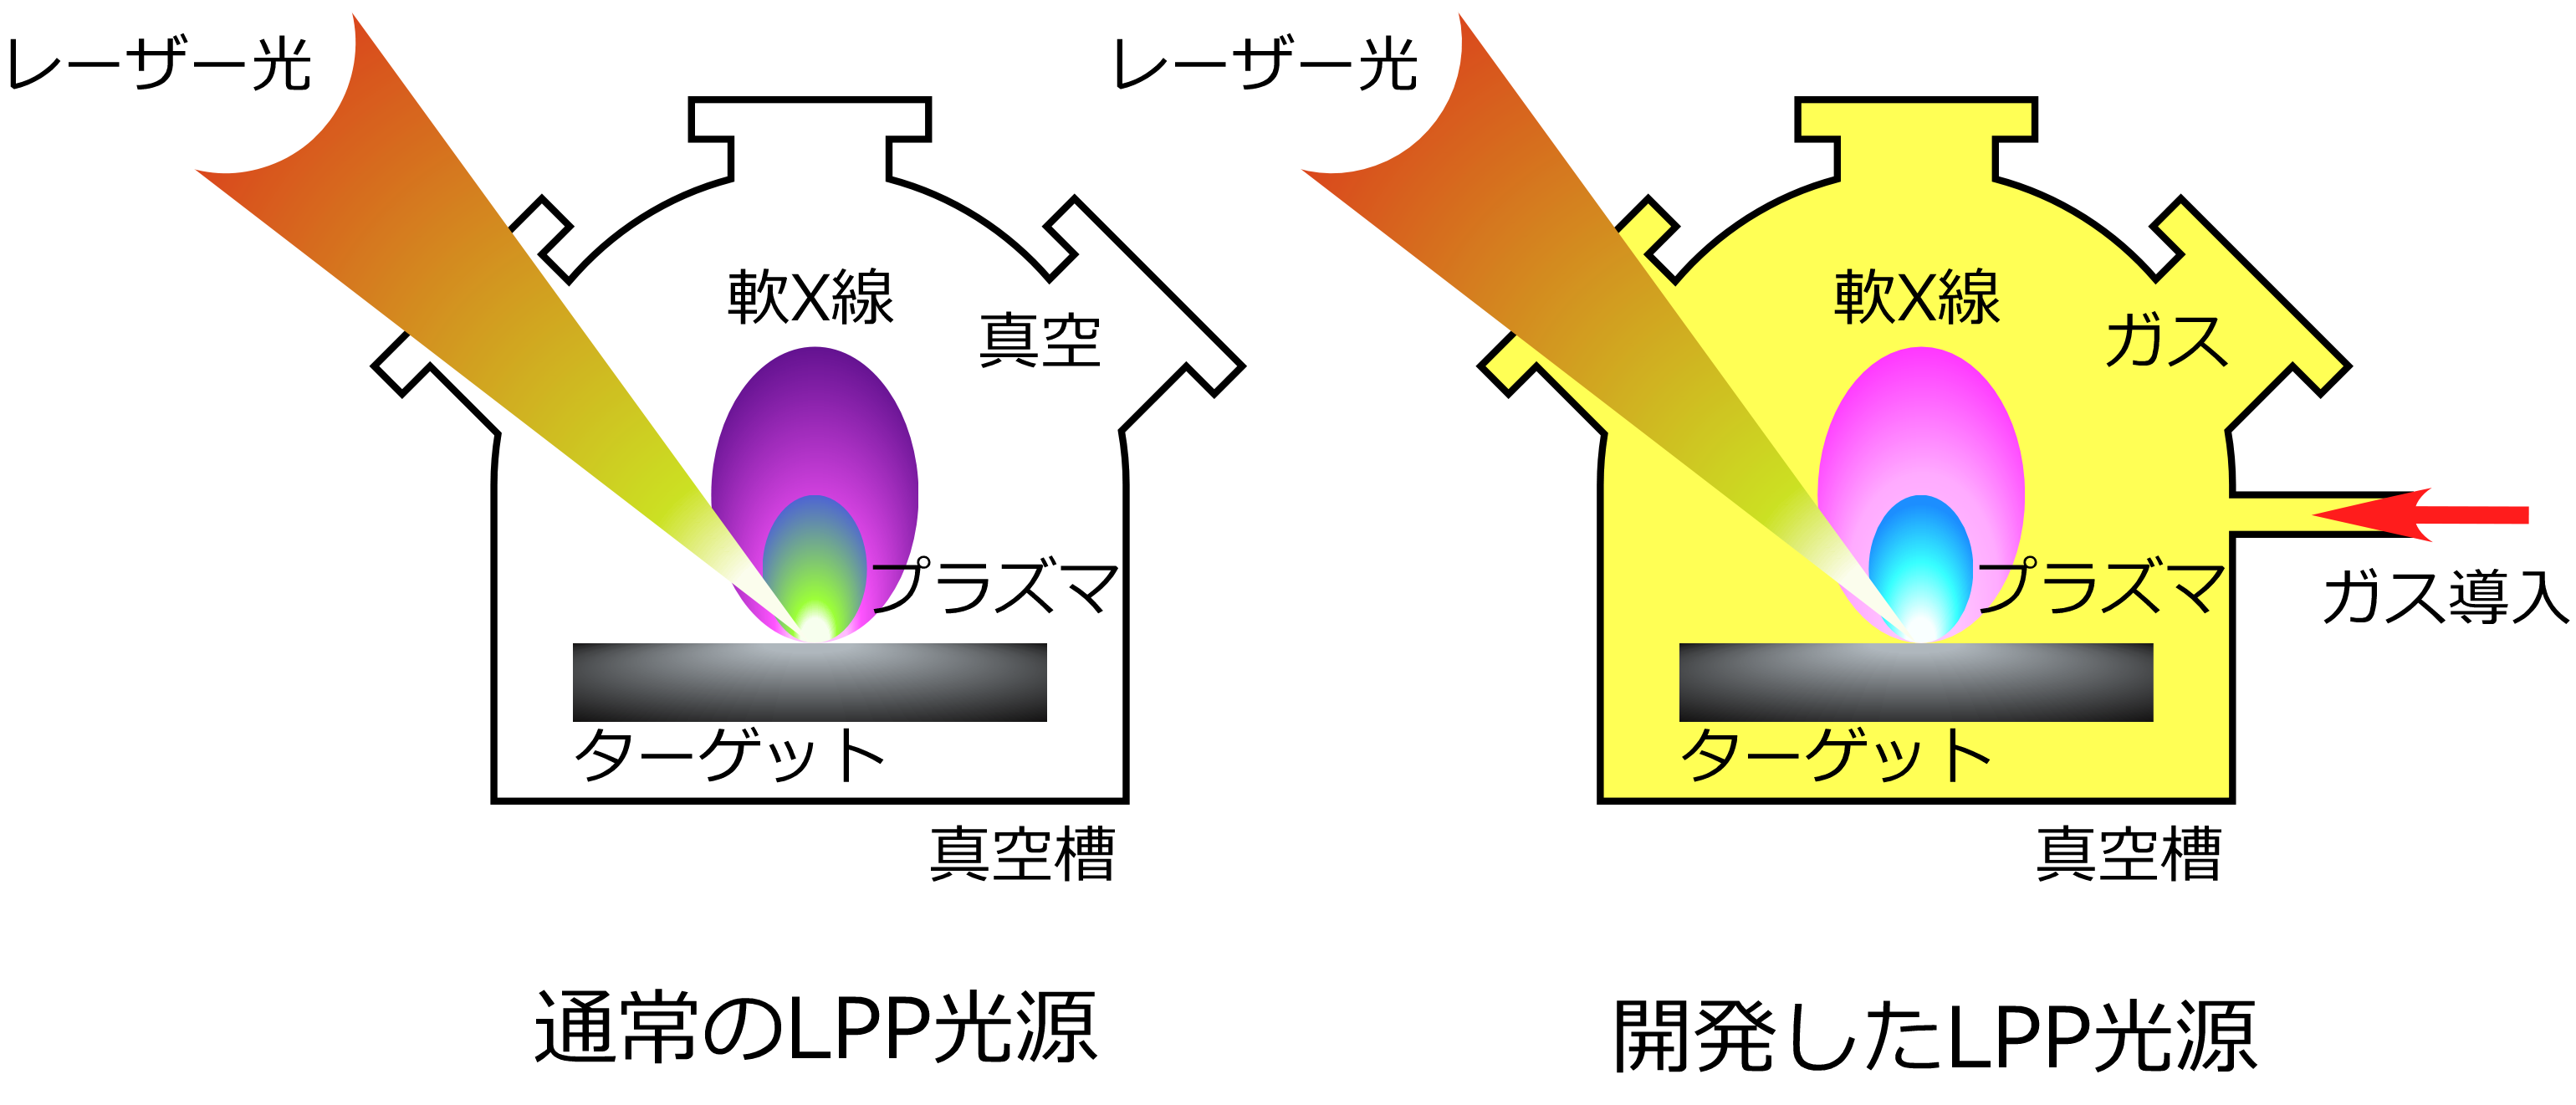 図2： これまでのLPP光源と今回のLPP光源との違い。の画像